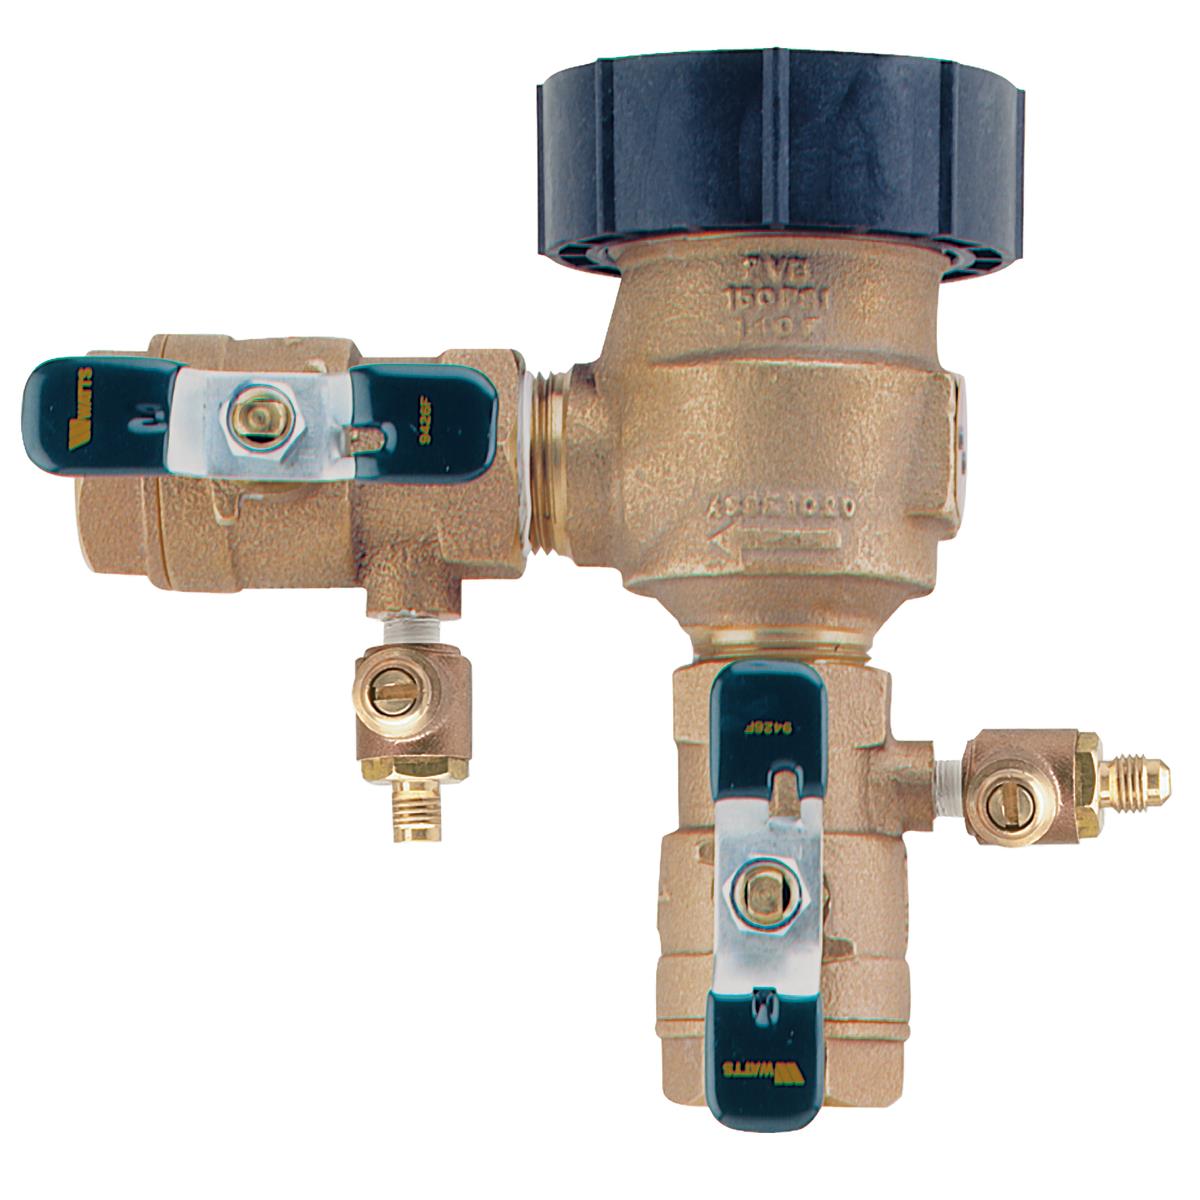 Watts 0386423 1/2 Feed Water Pressure Regulator